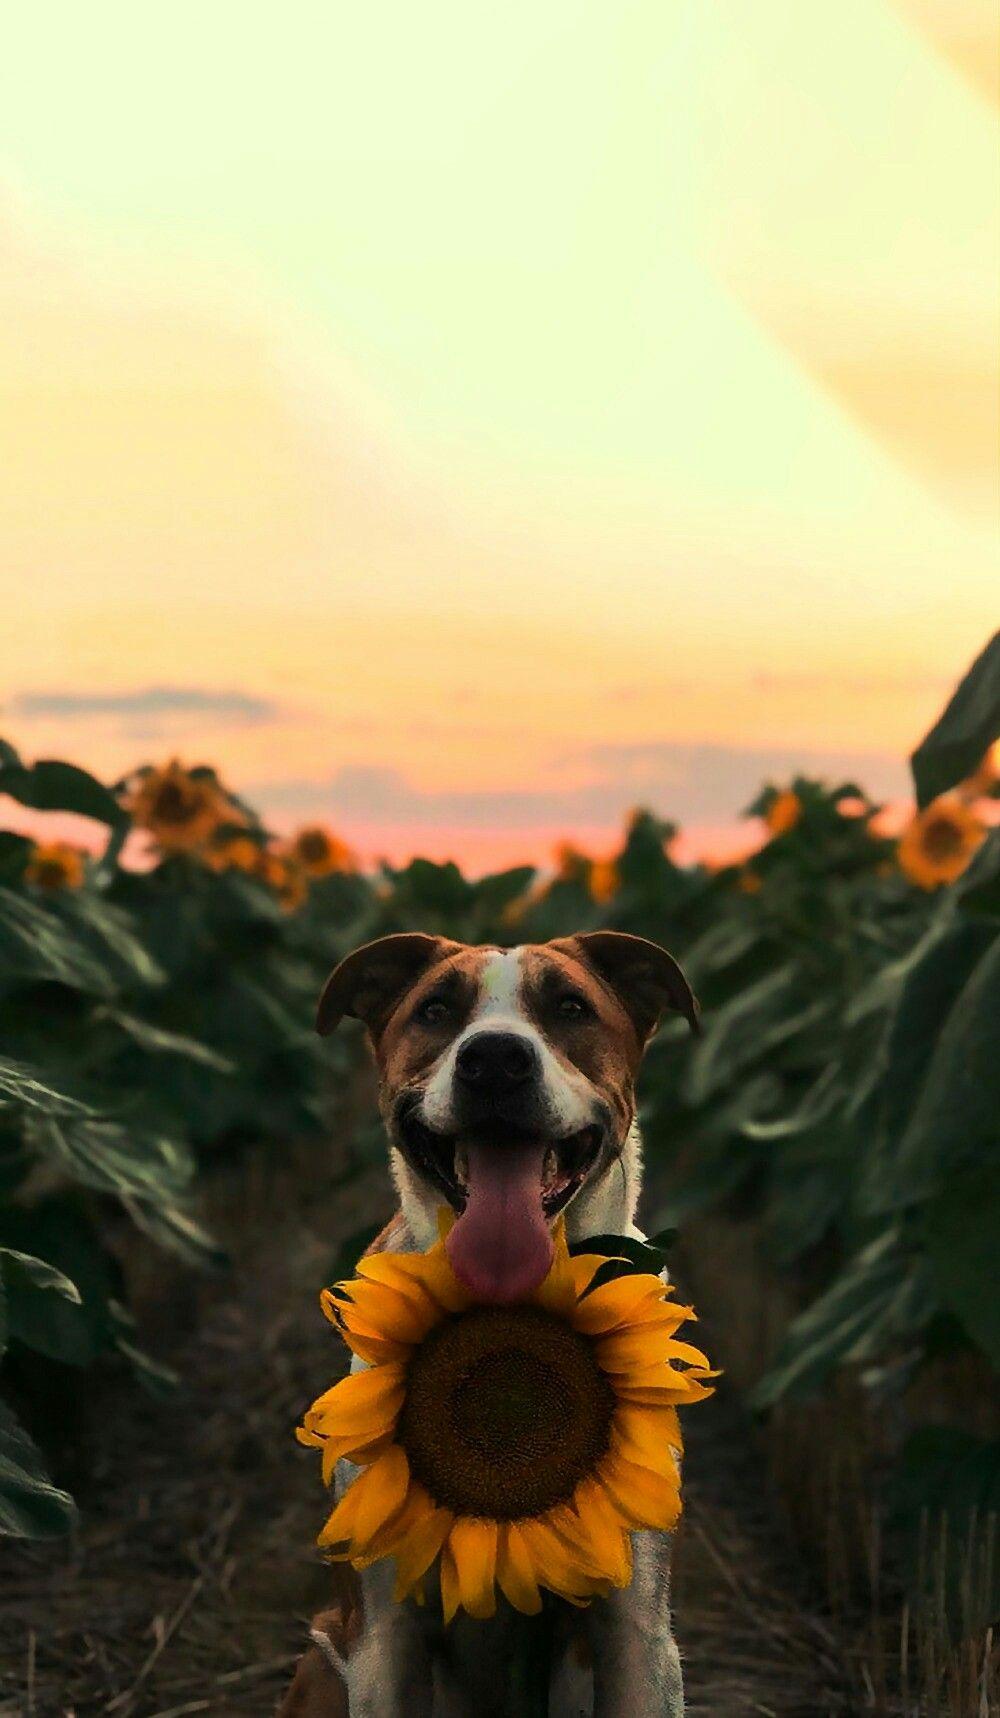 background. Dog wallpaper iphone, Dog wallpaper, Sunflower wallpaper